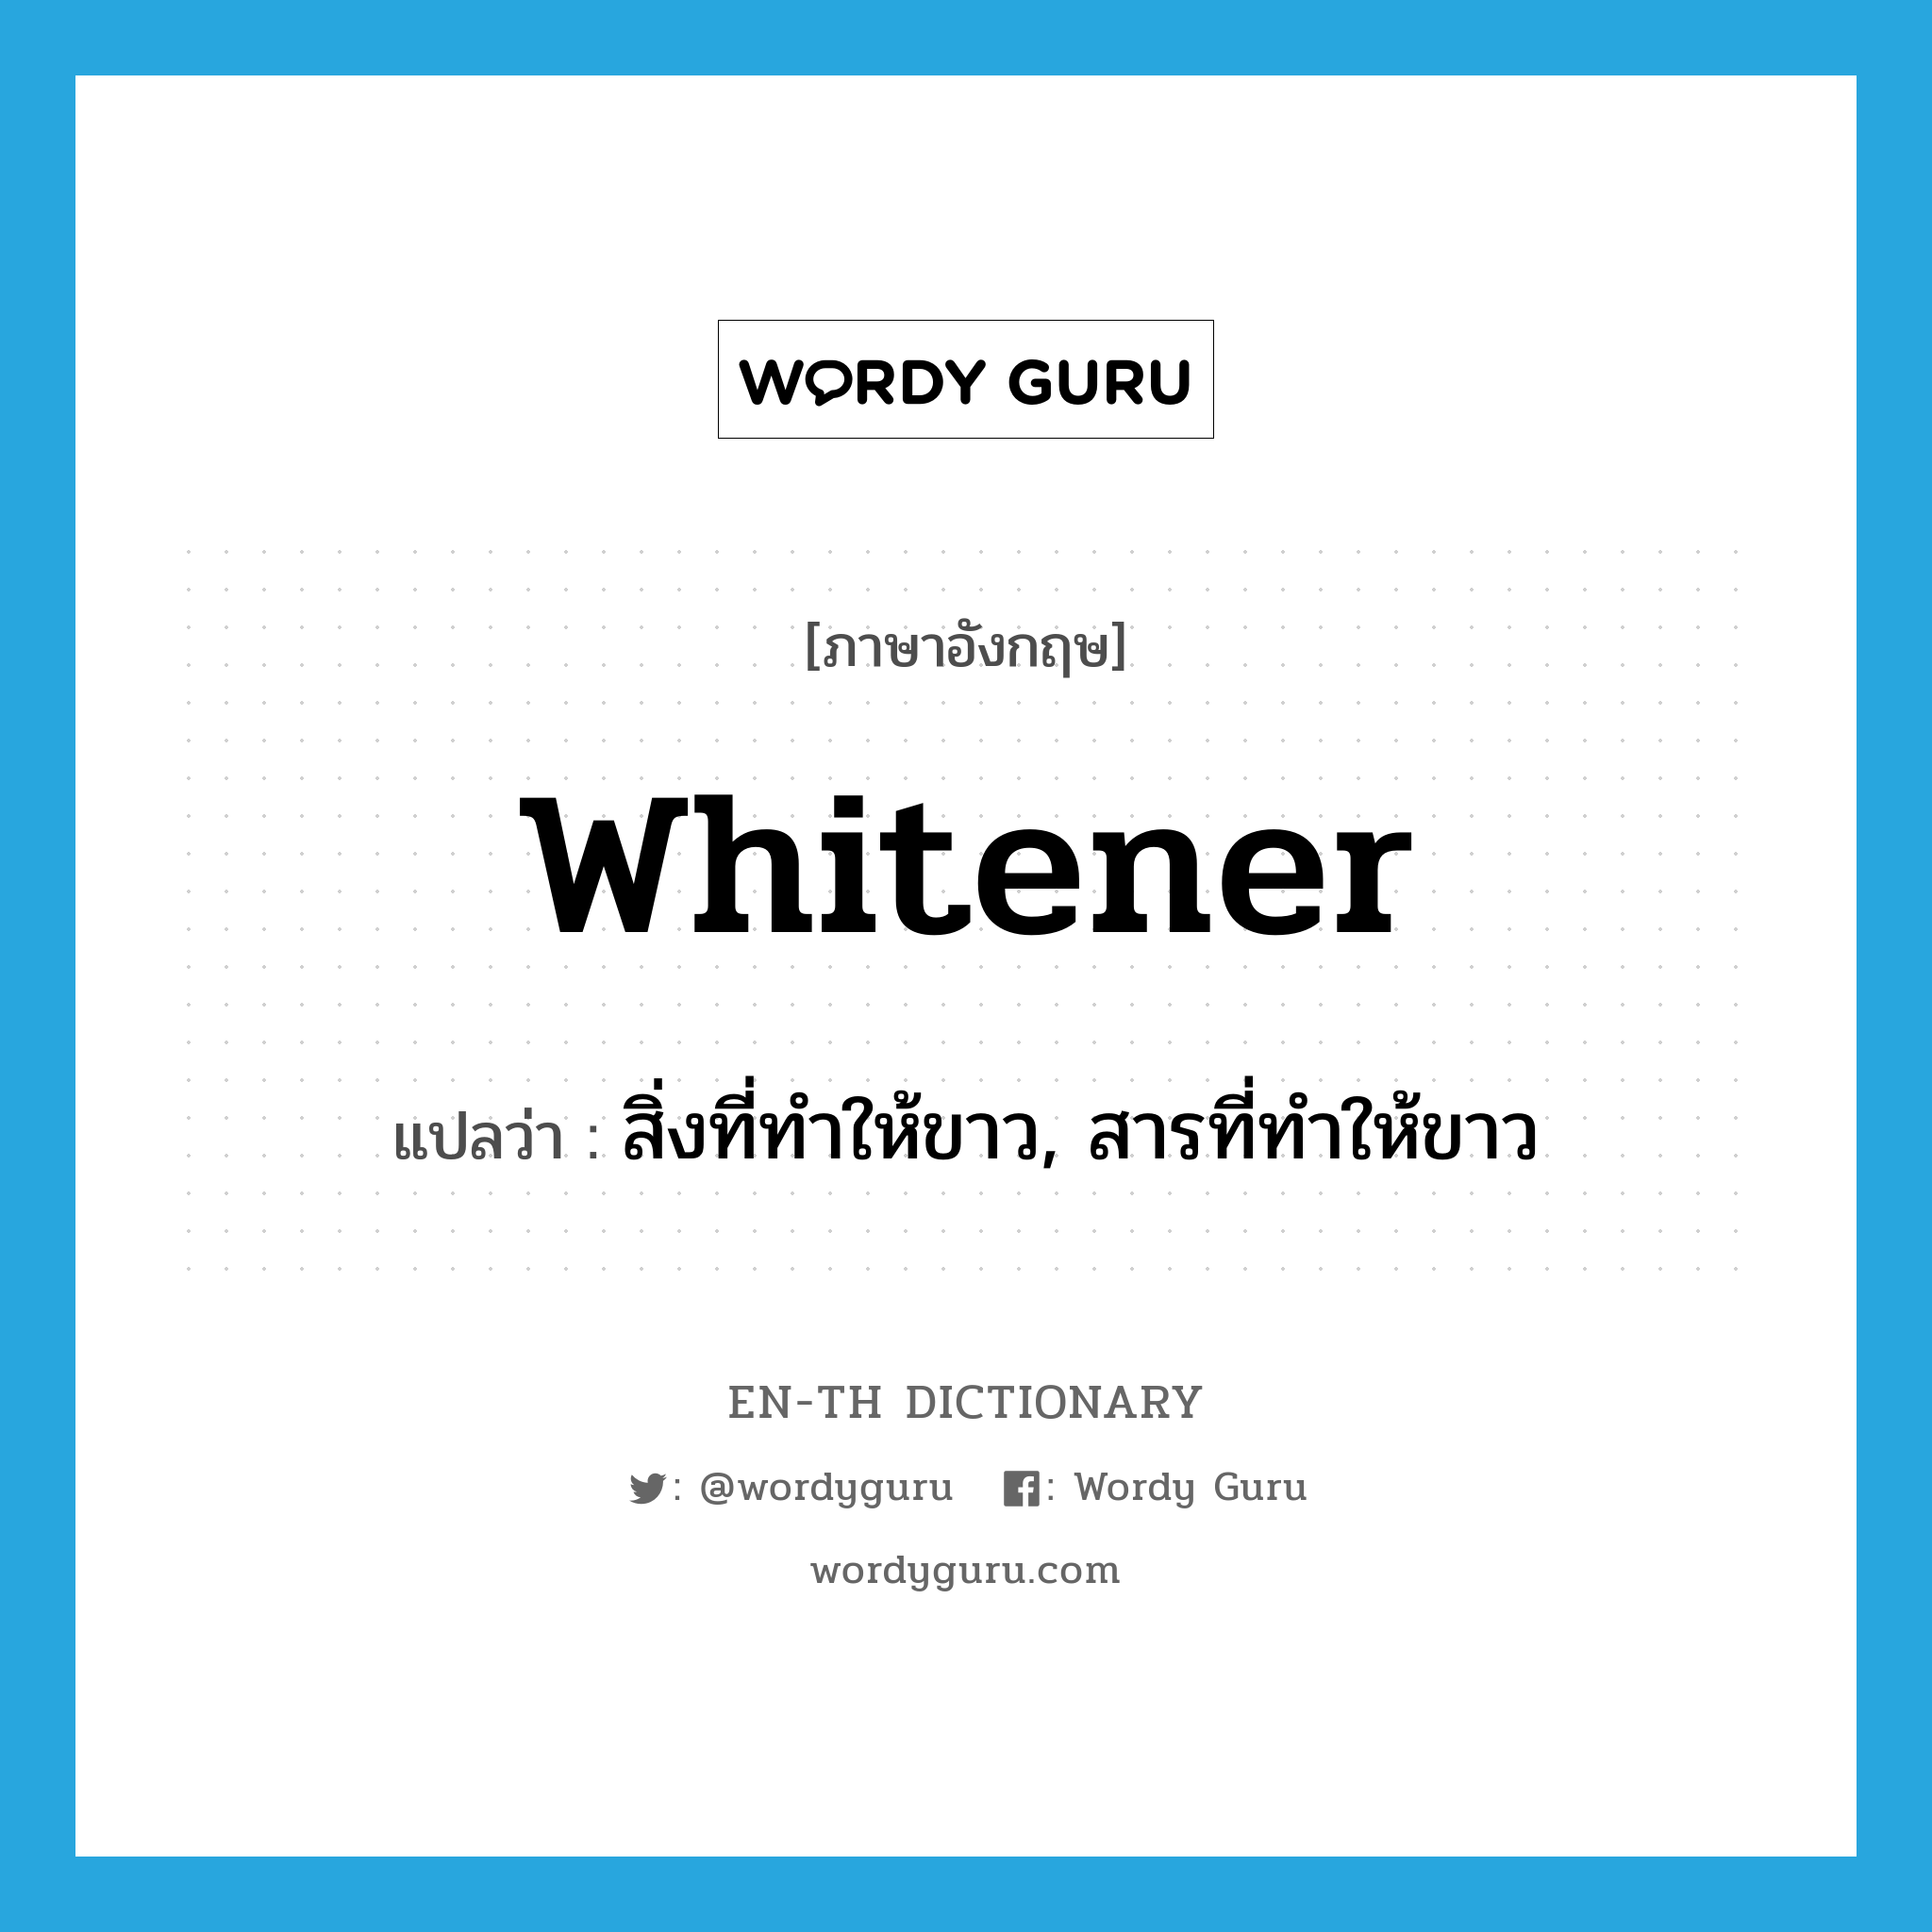 สิ่งที่ทำให้ขาว, สารที่ทำให้ขาว ภาษาอังกฤษ?, คำศัพท์ภาษาอังกฤษ สิ่งที่ทำให้ขาว, สารที่ทำให้ขาว แปลว่า whitener ประเภท N หมวด N